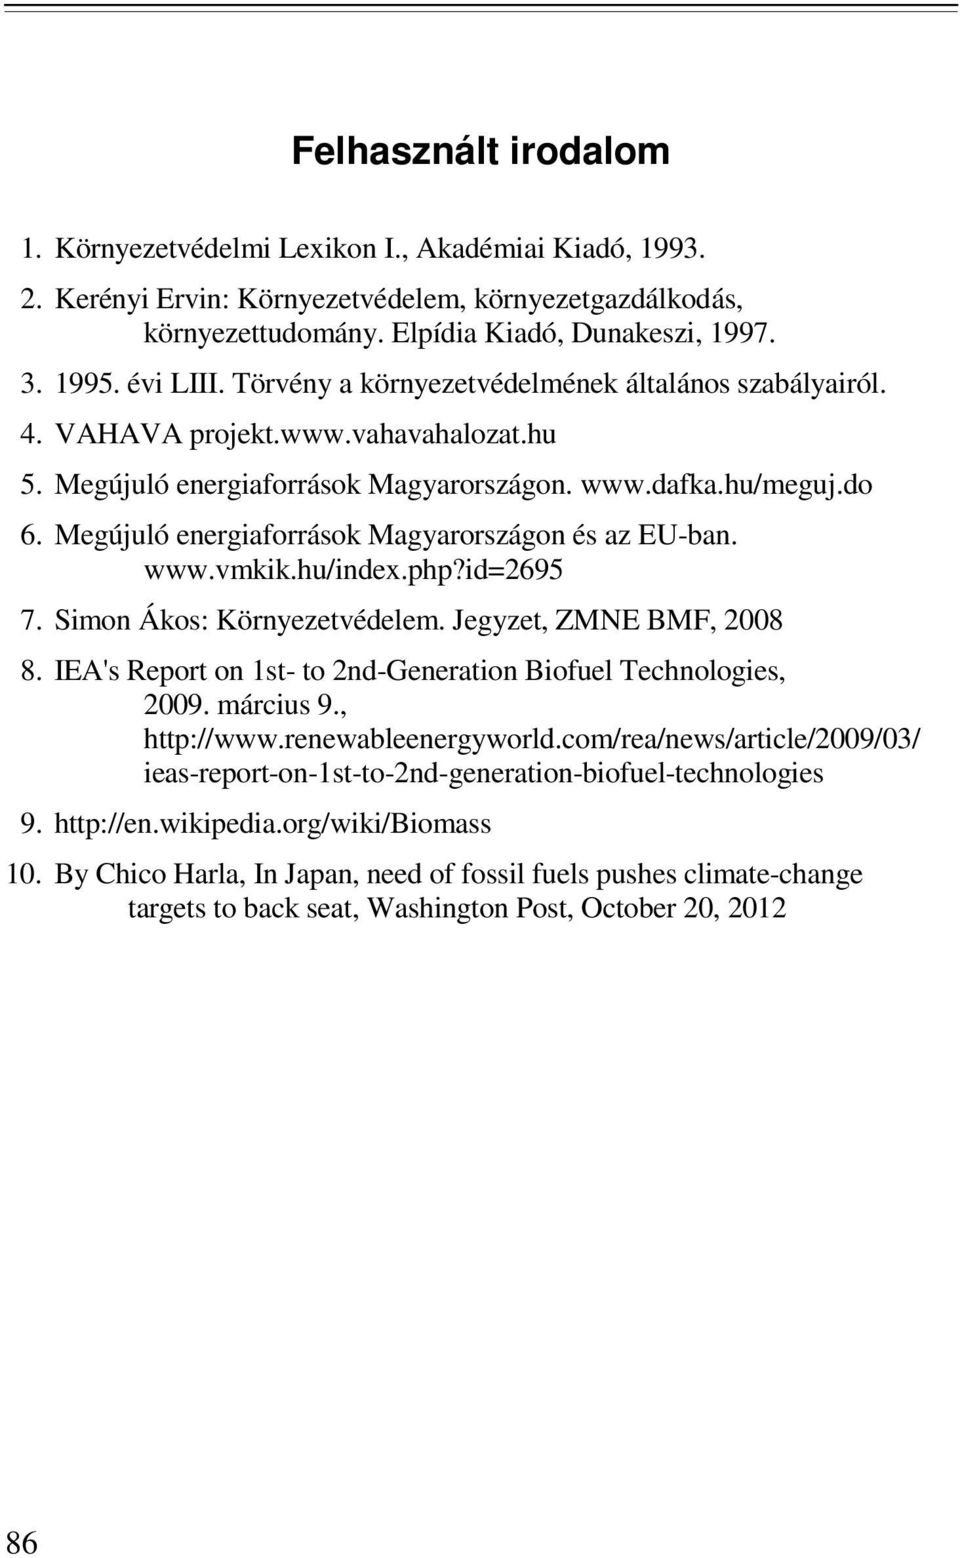 Megújuló energiaforrások Magyarországon és az EU-ban. www.vmkik.hu/index.php?id=2695 7. Simon Ákos: Környezetvédelem. Jegyzet, ZMNE BMF, 2008 8.